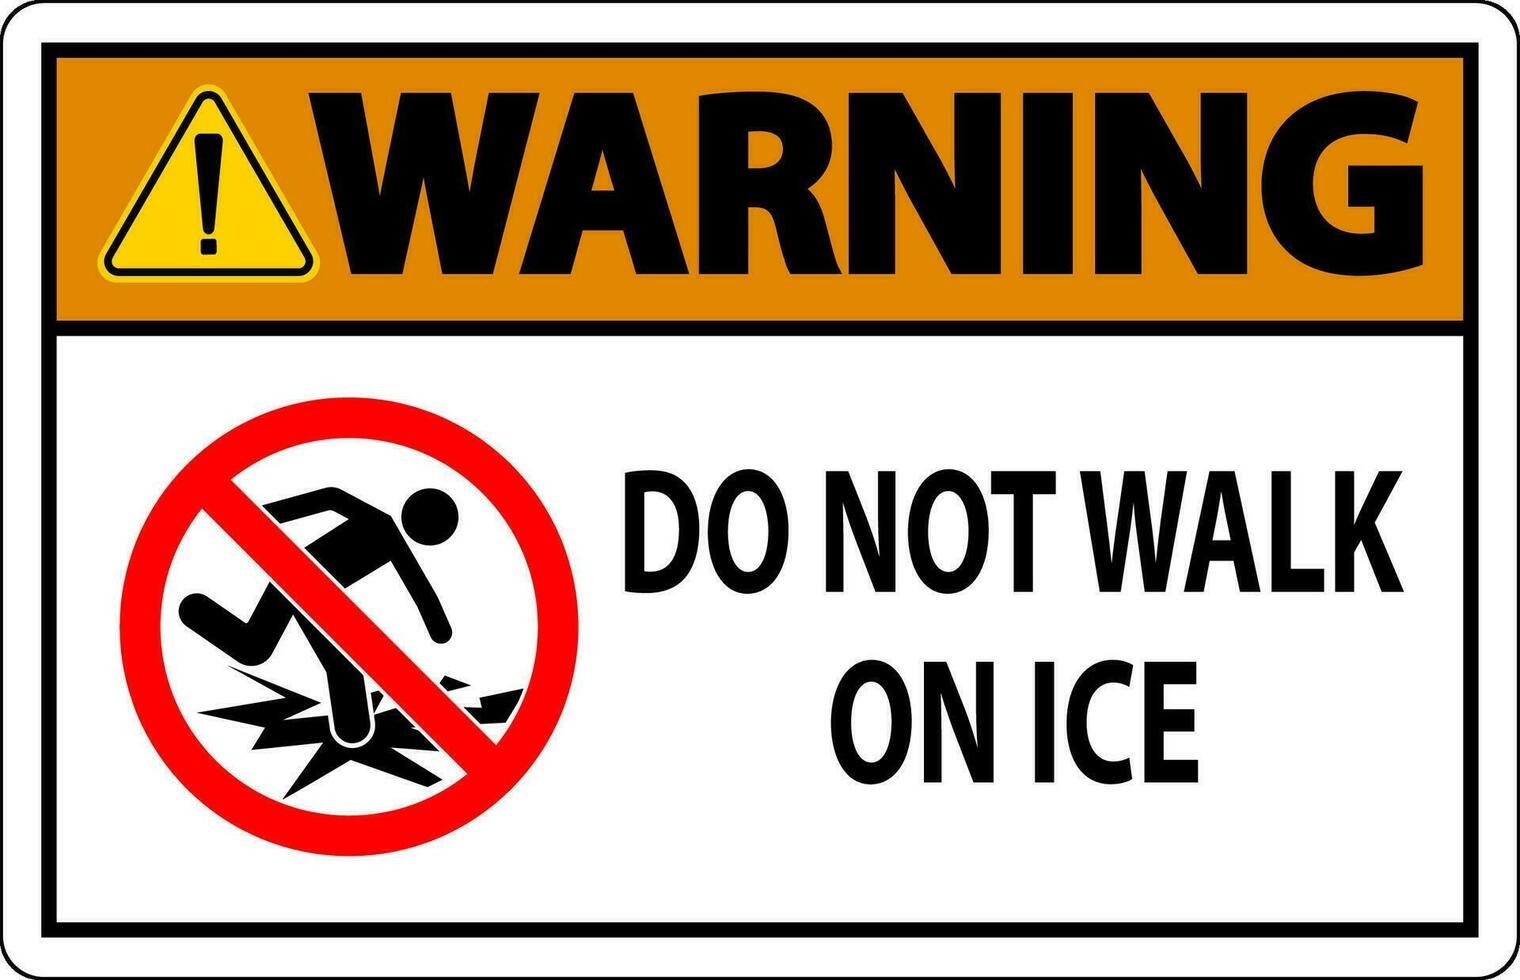 avvertimento cartello fare non camminare su ghiaccio vettore